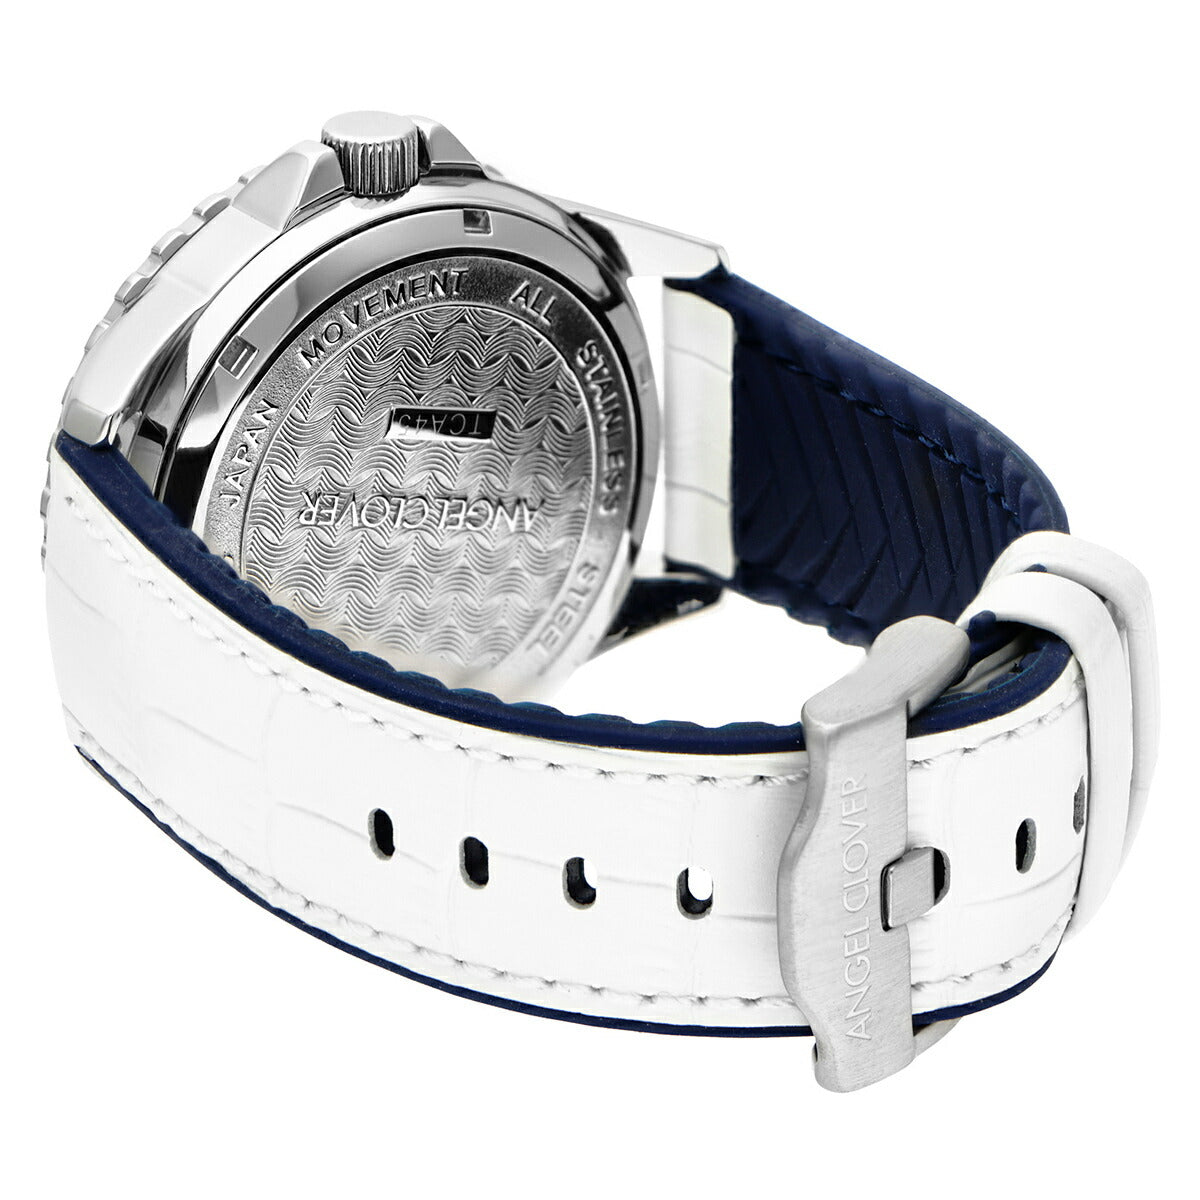 エンジェルクローバー ANGEL CLOVER 腕時計 メンズ TCA45SWH-WH 自動巻き タイムクラフトダイバー オートマチック TIME CRAFT DIVER